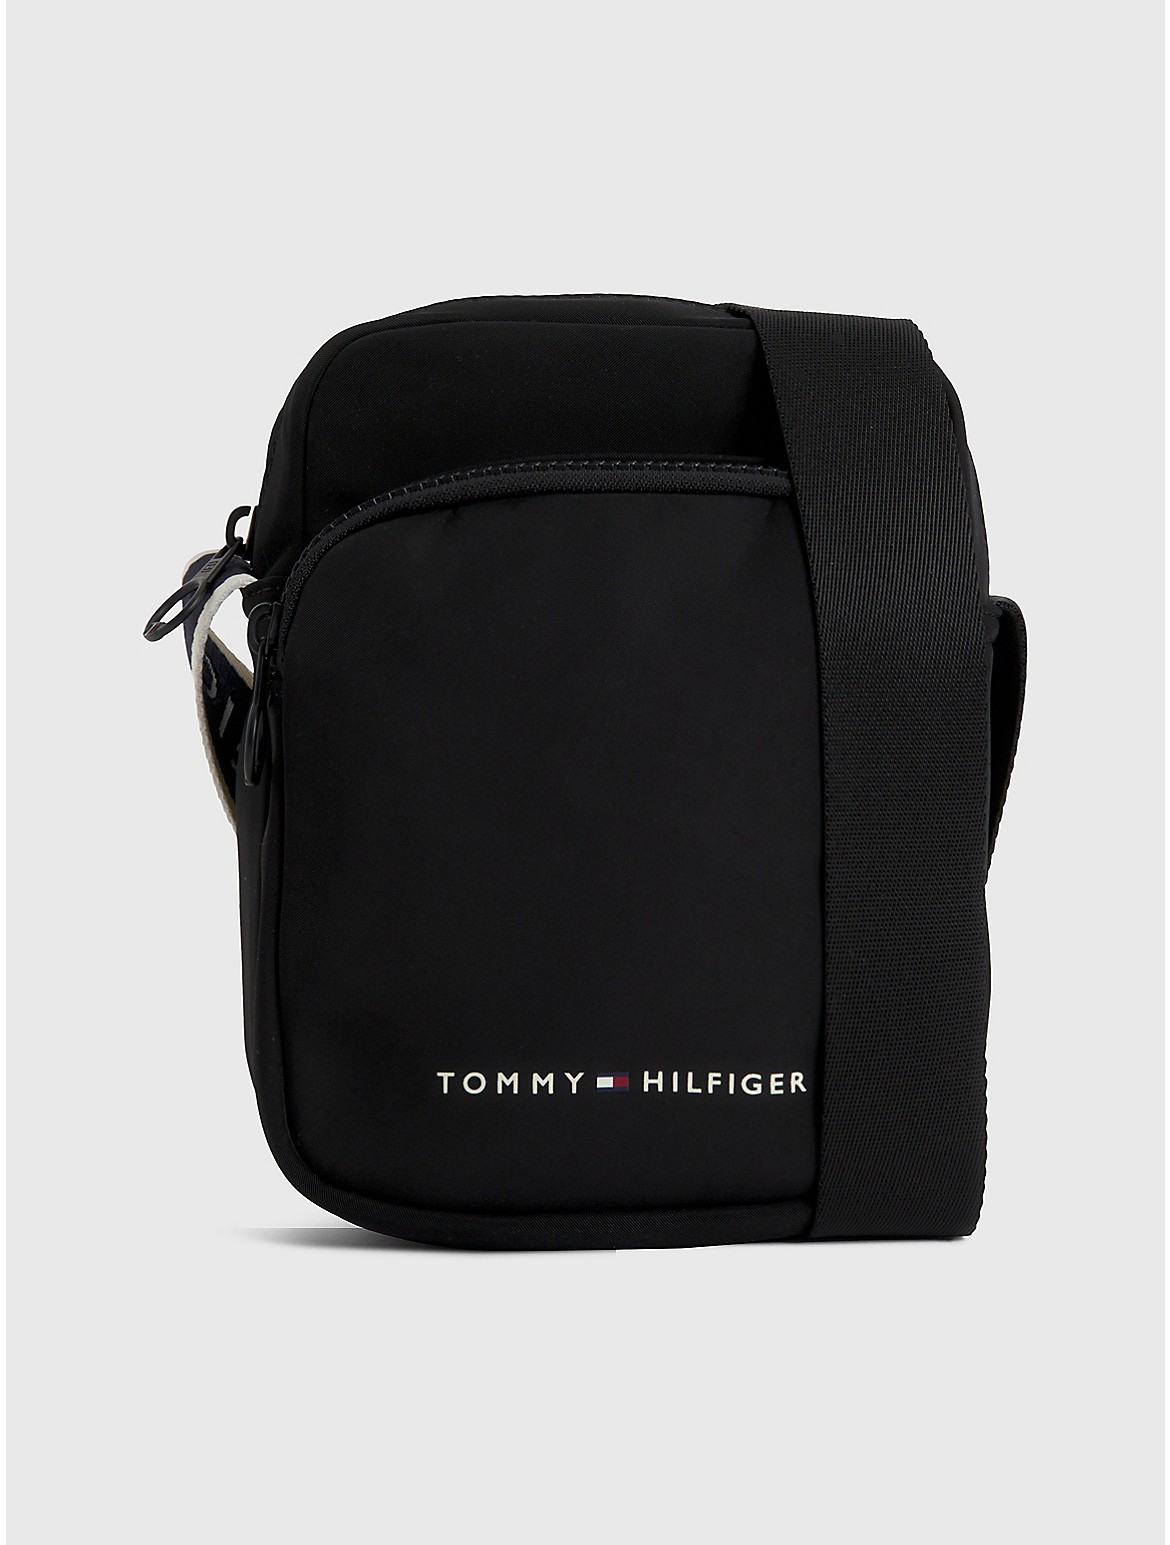 Tommy Hilfiger Men's Tommy Logo Mini Reporter Bag - Black